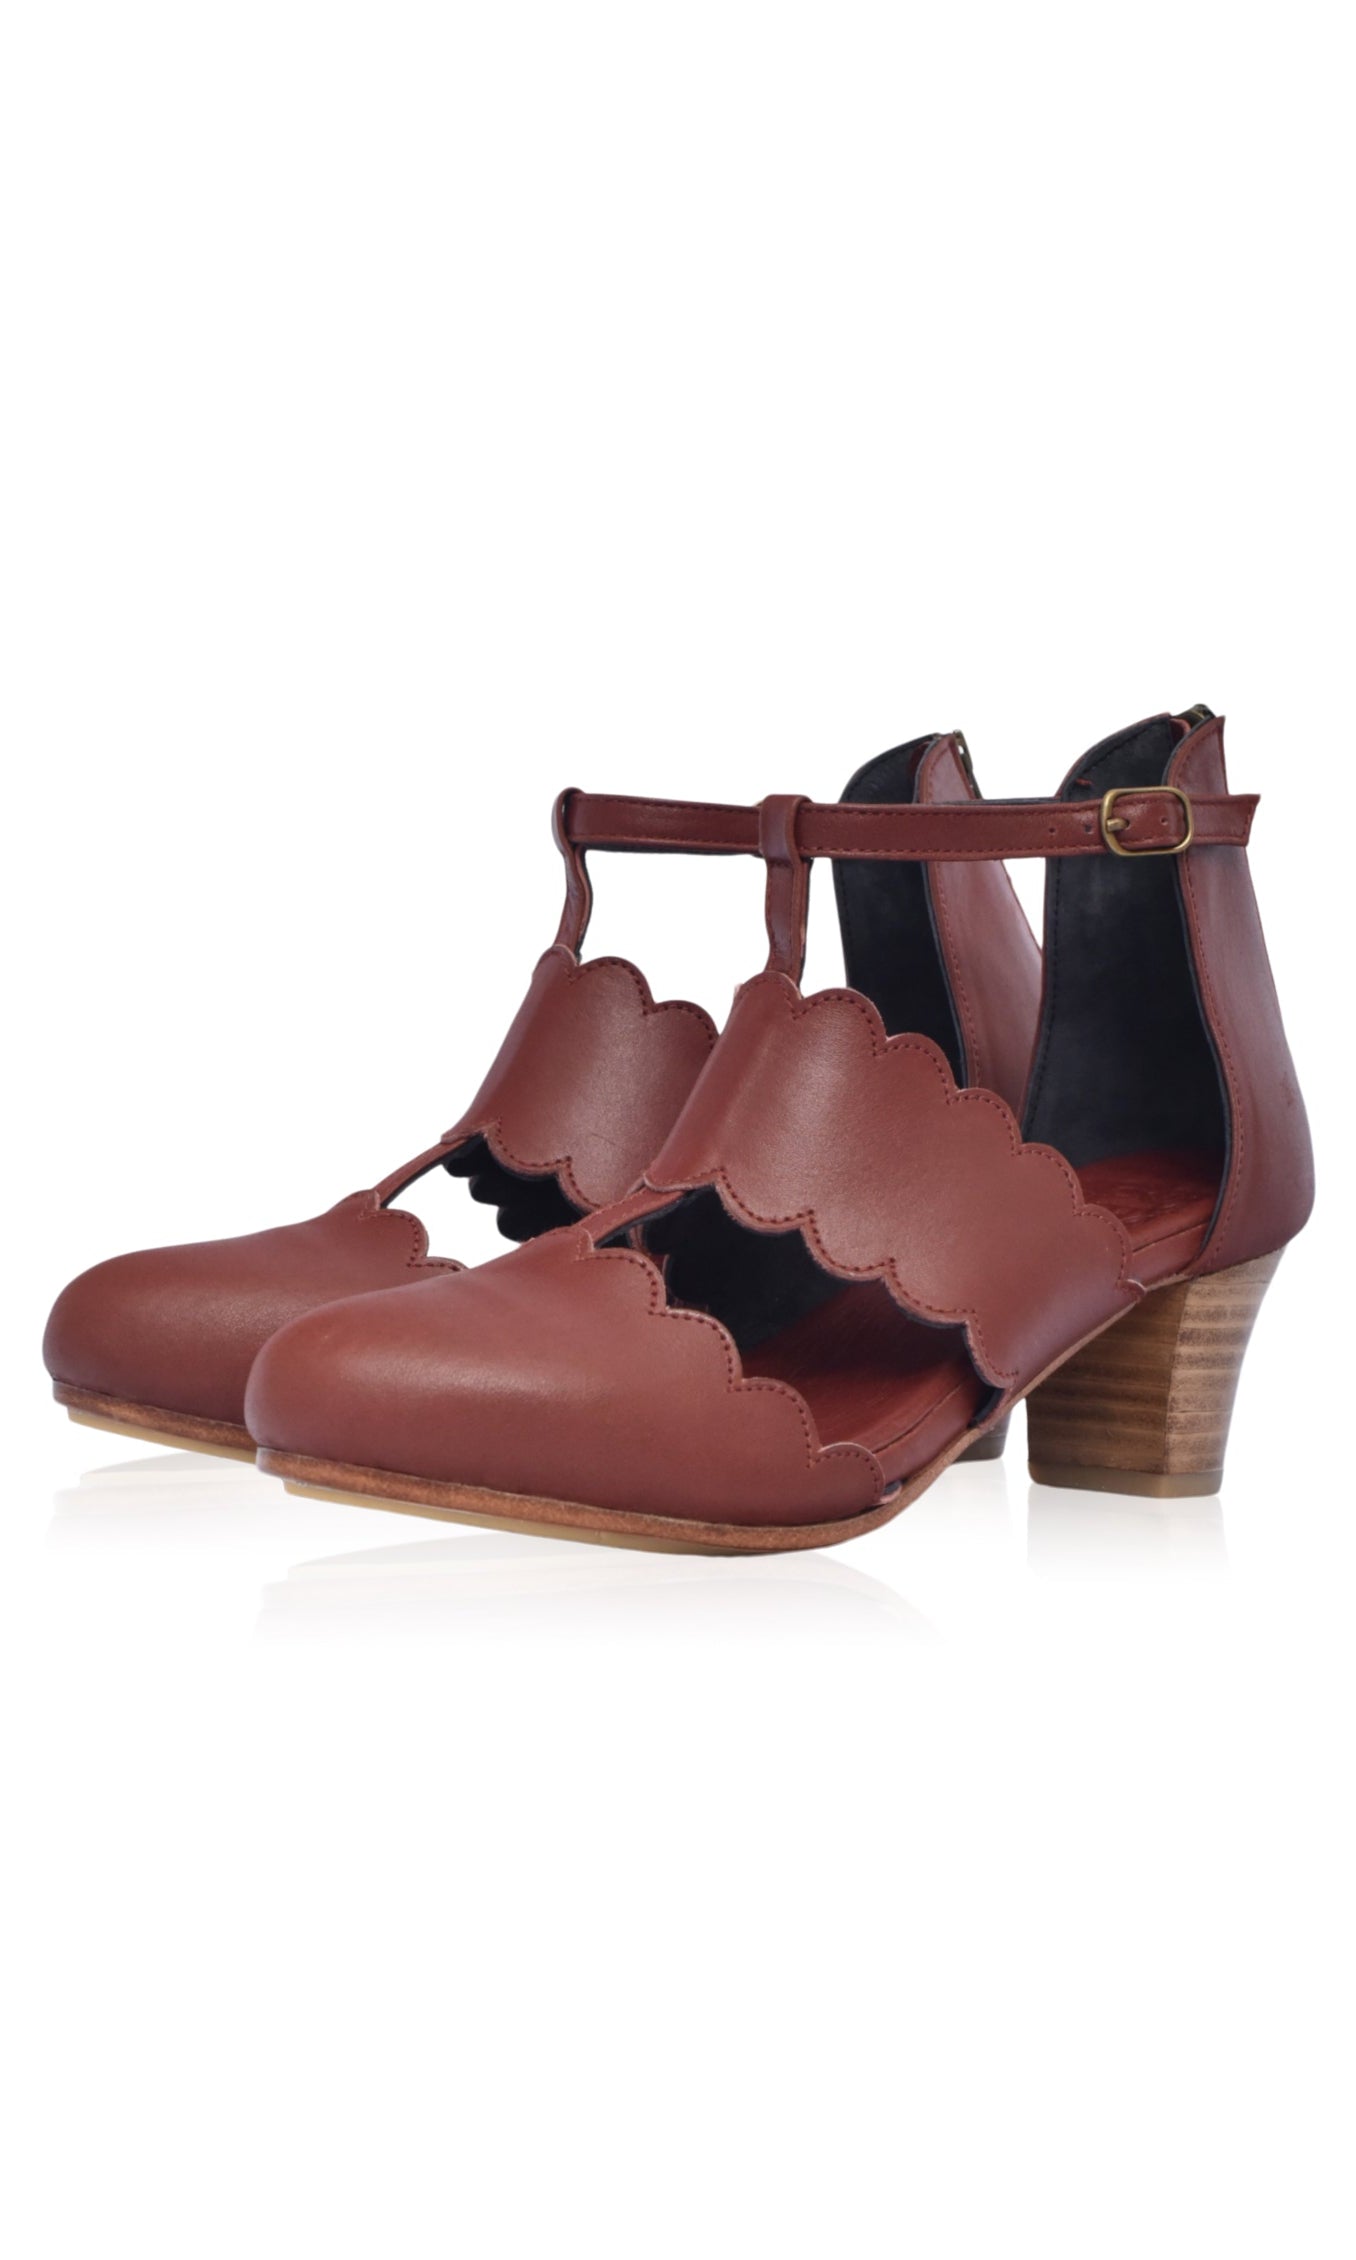 Incognito Leather 5 cm Heel (Sz. 6.5 & 12) ELF